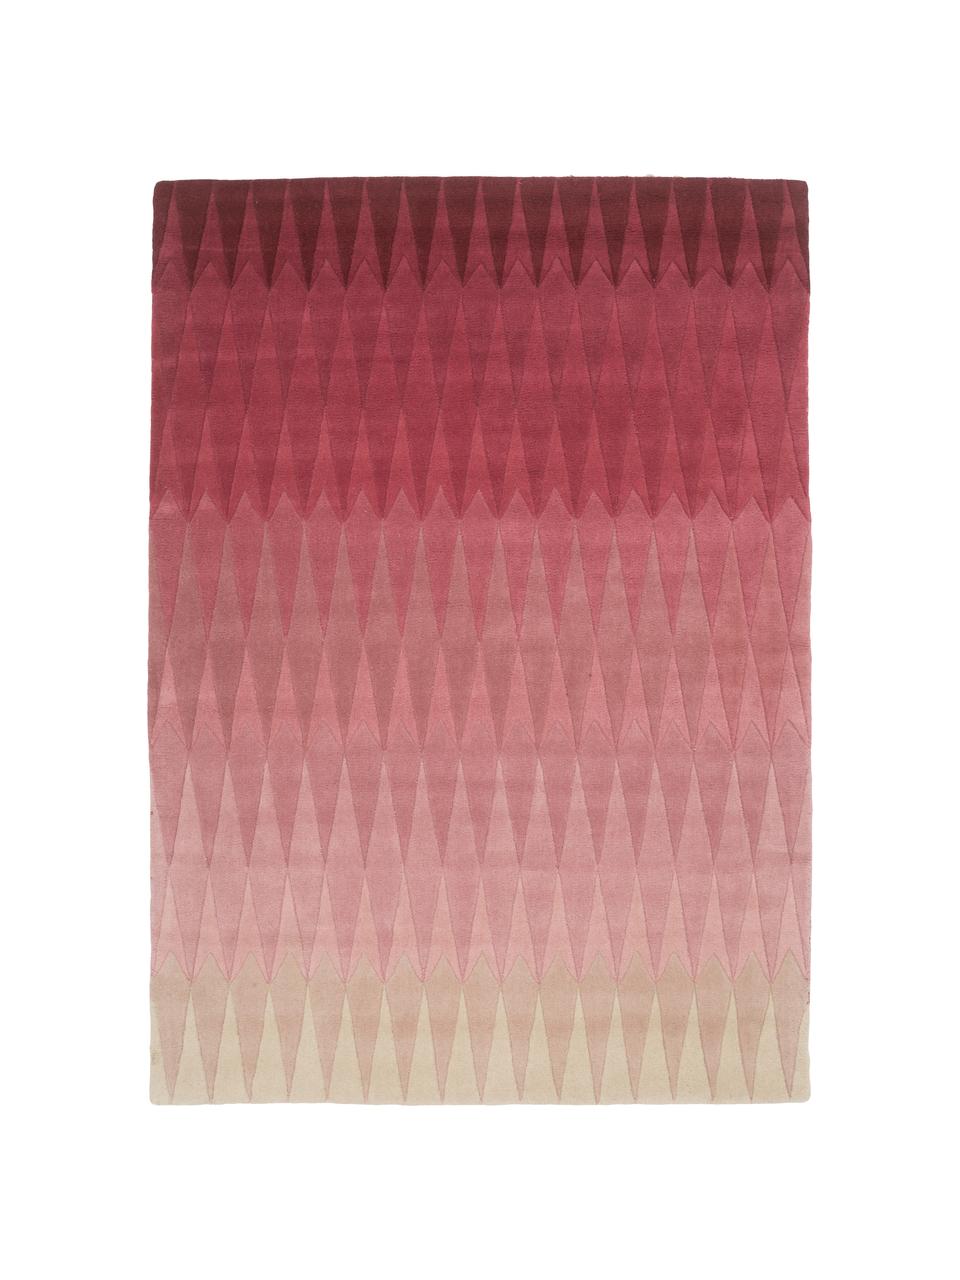 Handgetufteter Designteppich Acacia mit Farbverlauf in Pink, Pink, B 170 x L 240 cm (Größe M)